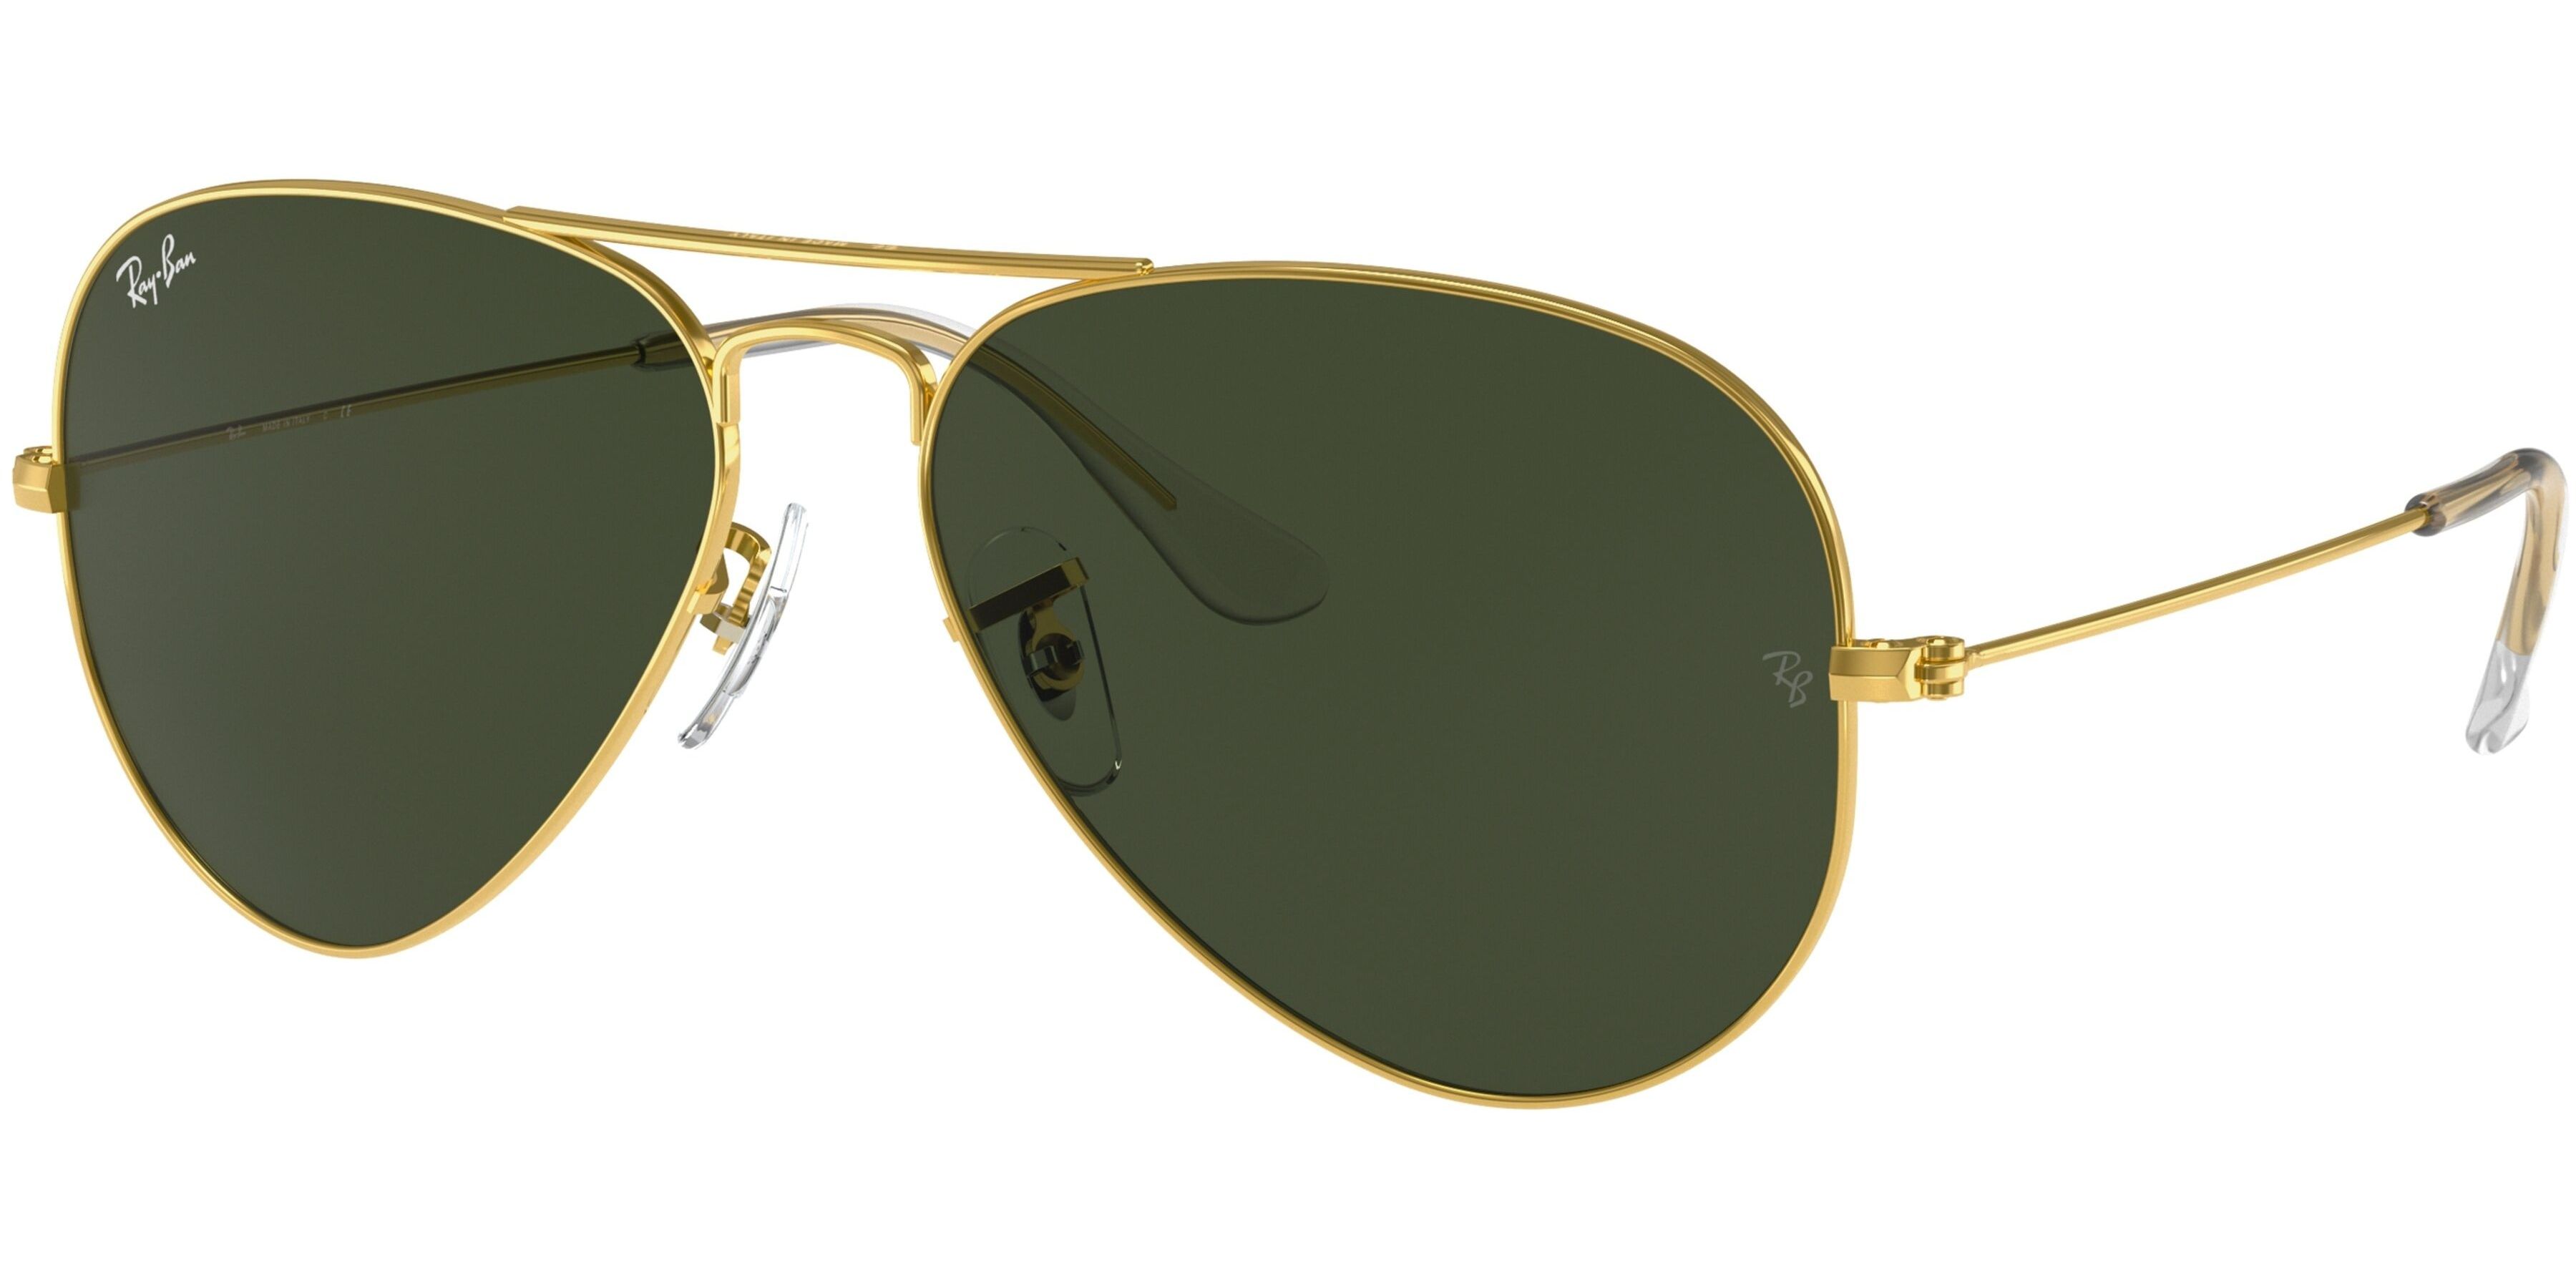 Sluneční brýle Ray-Ban® model 3025, barva obruby zlatá lesk, čočka zelená, kód barevné varianty 001. 